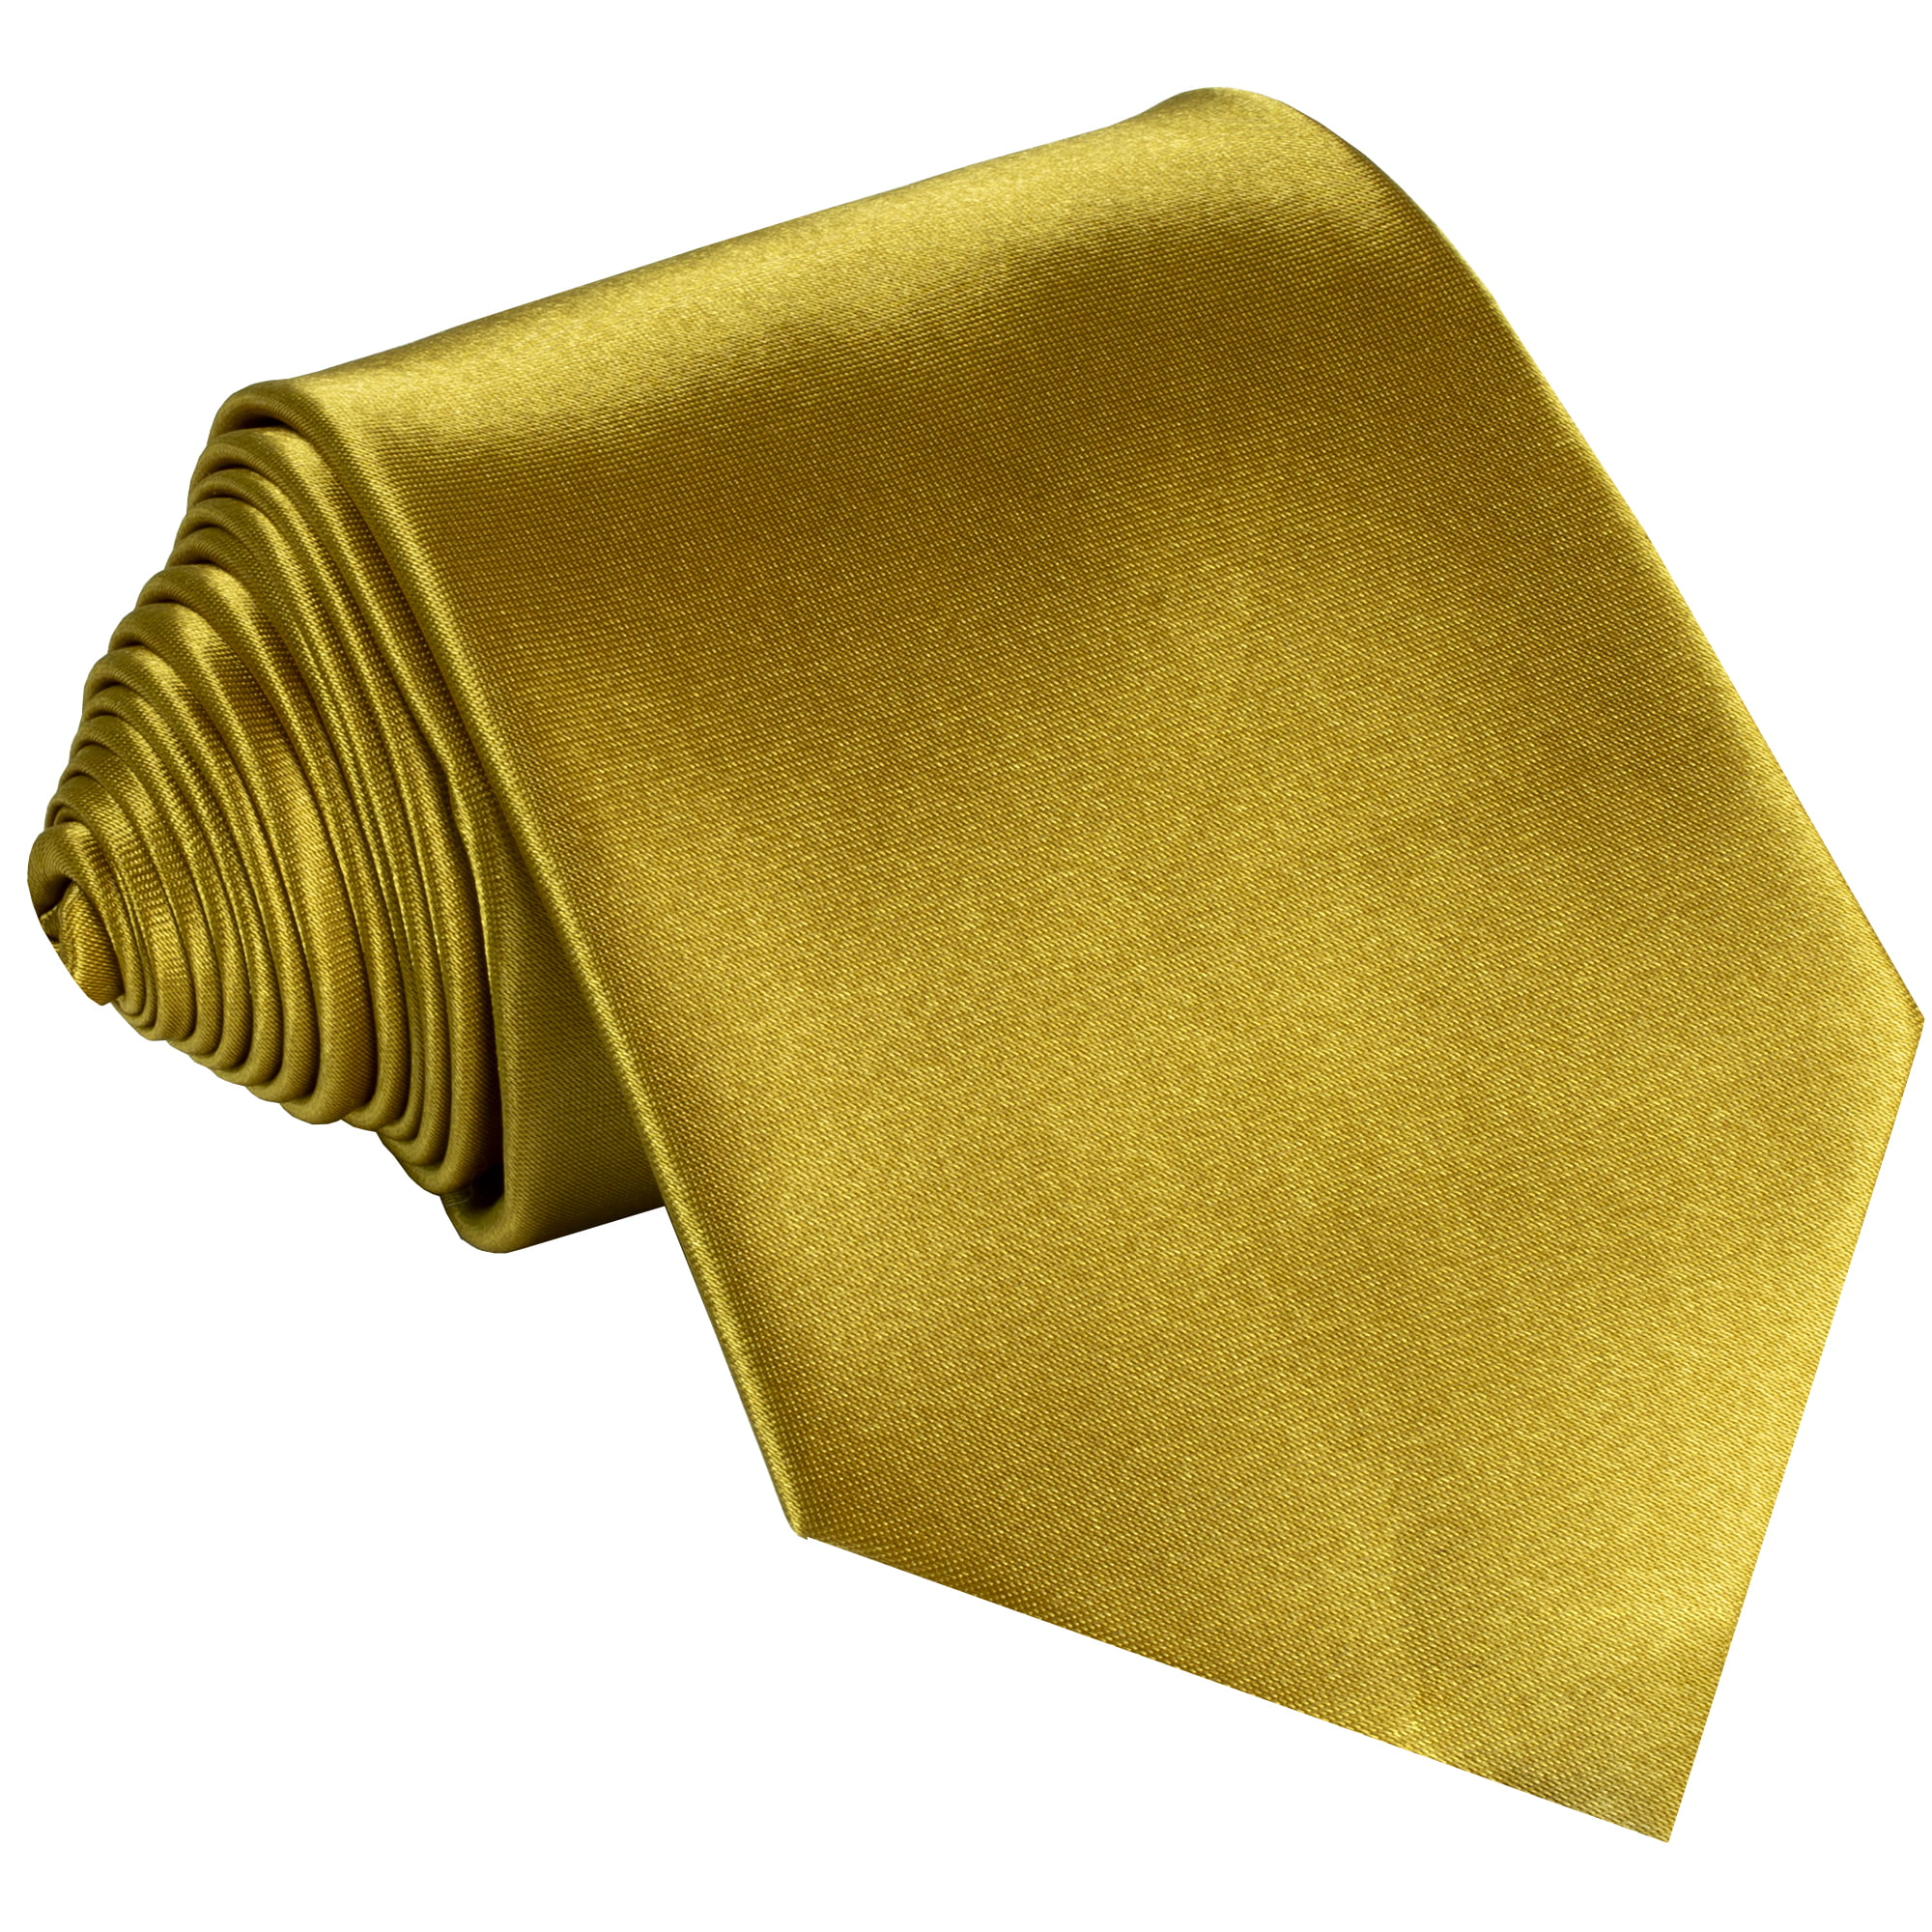 NeckTie Solid GOLD Color Men's Neck Tie